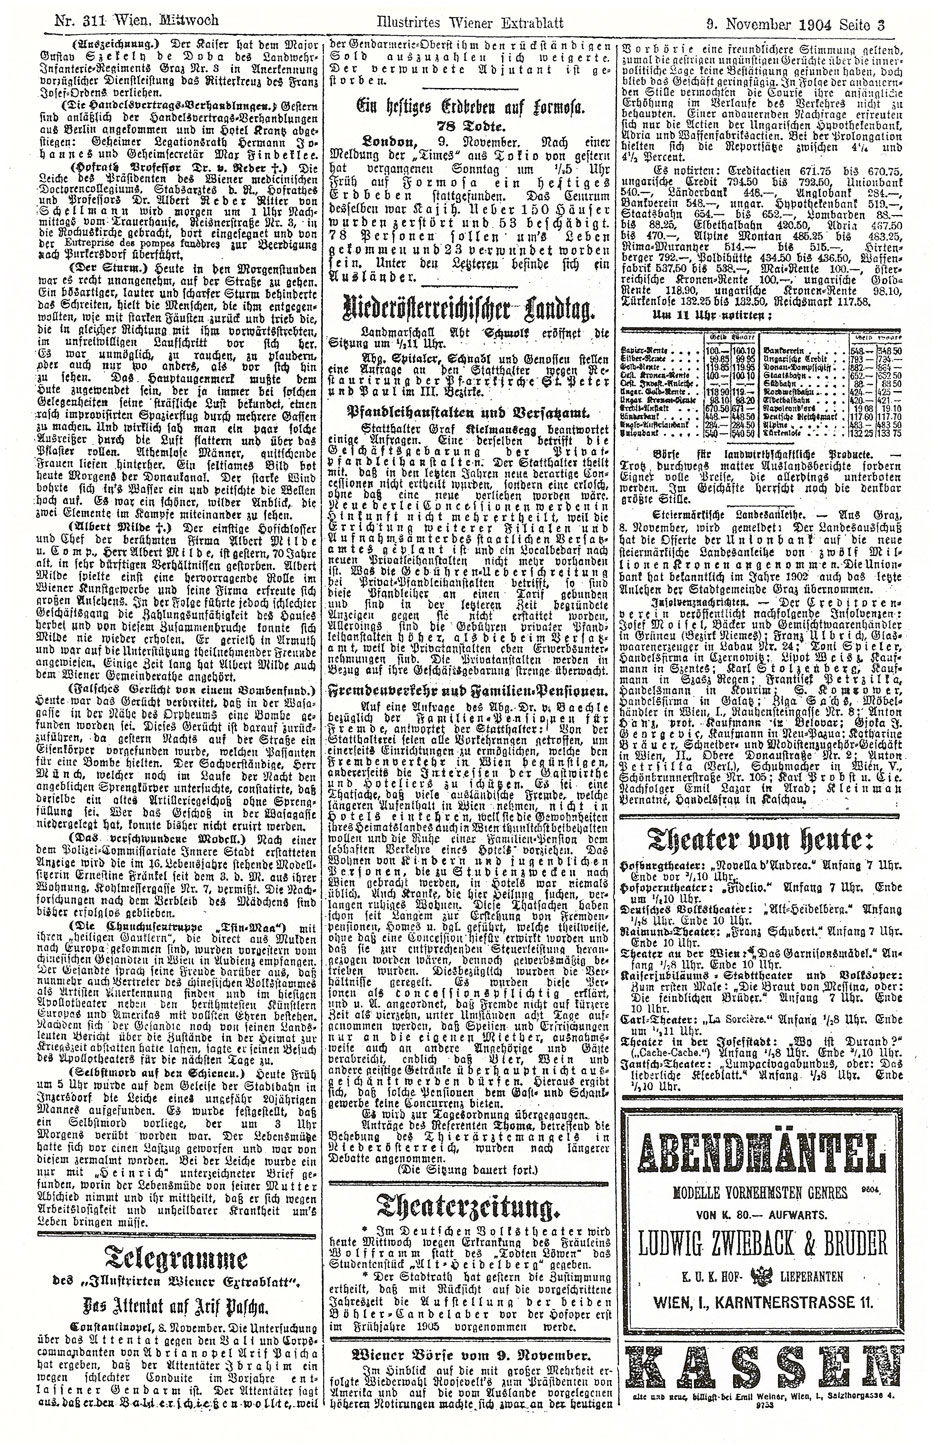 Illustriertes Wiener Extrablatt, 9.11.1904; Seite 3